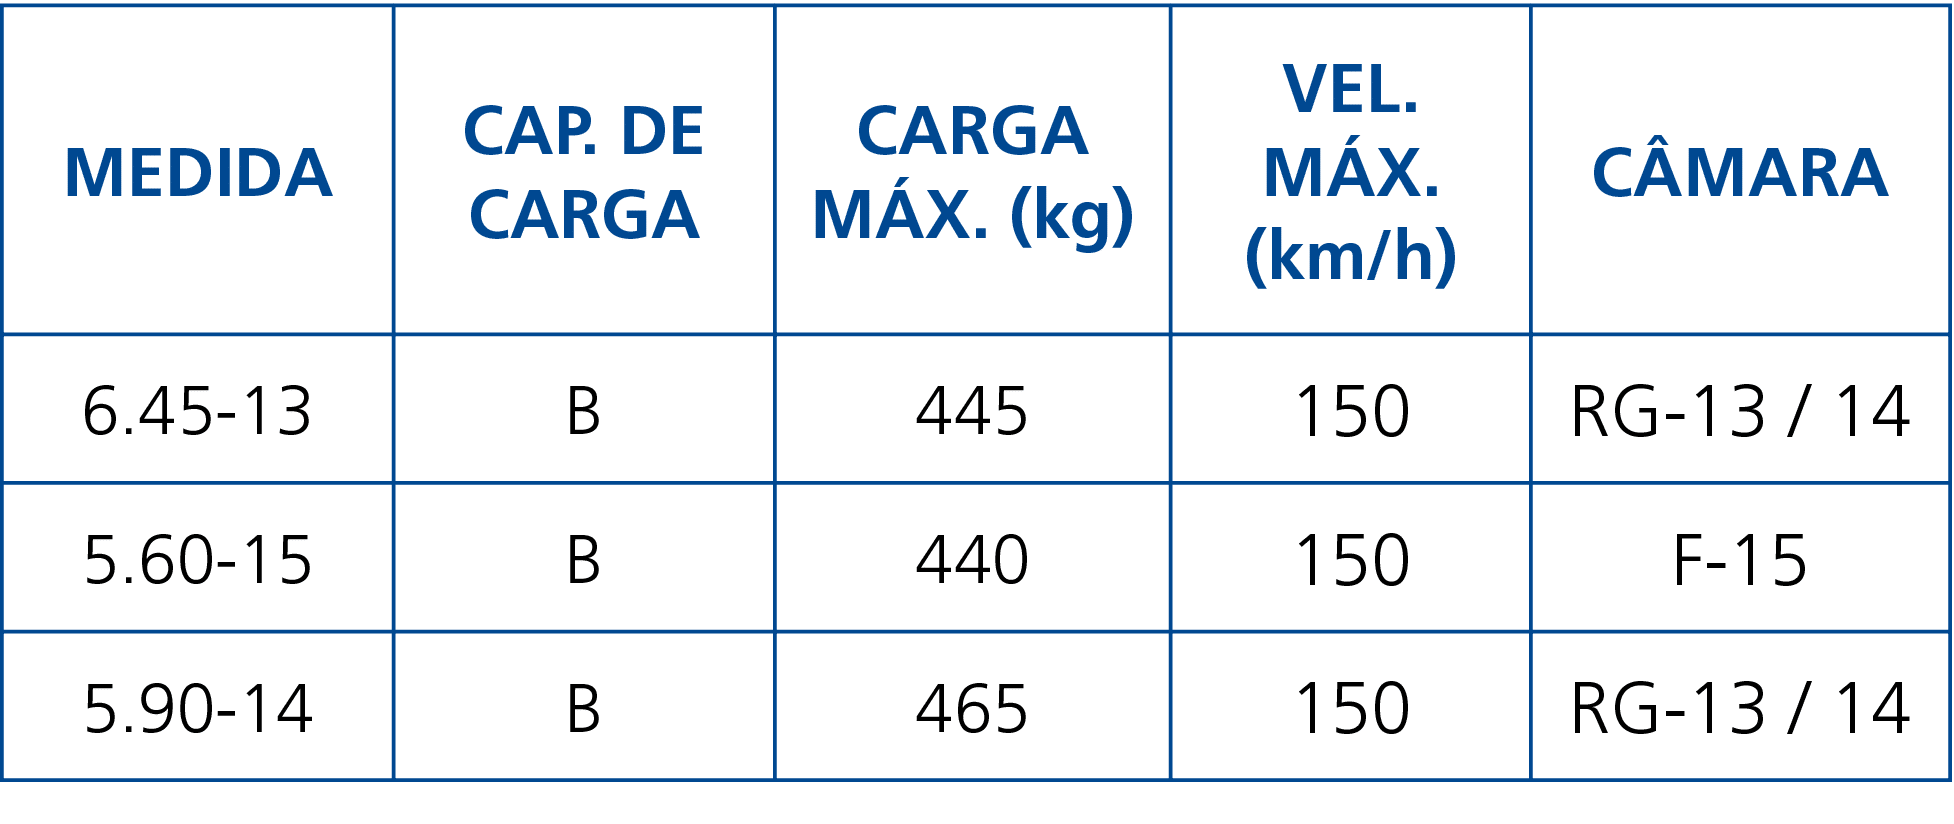 Medida,Cap  de Carga,Carga Máx  (kg),Vel  Máx  (km h),Câmara,6 45-13,B,445,150,RG-13   14,5 60-15,B,440,150,F-15,5 90   